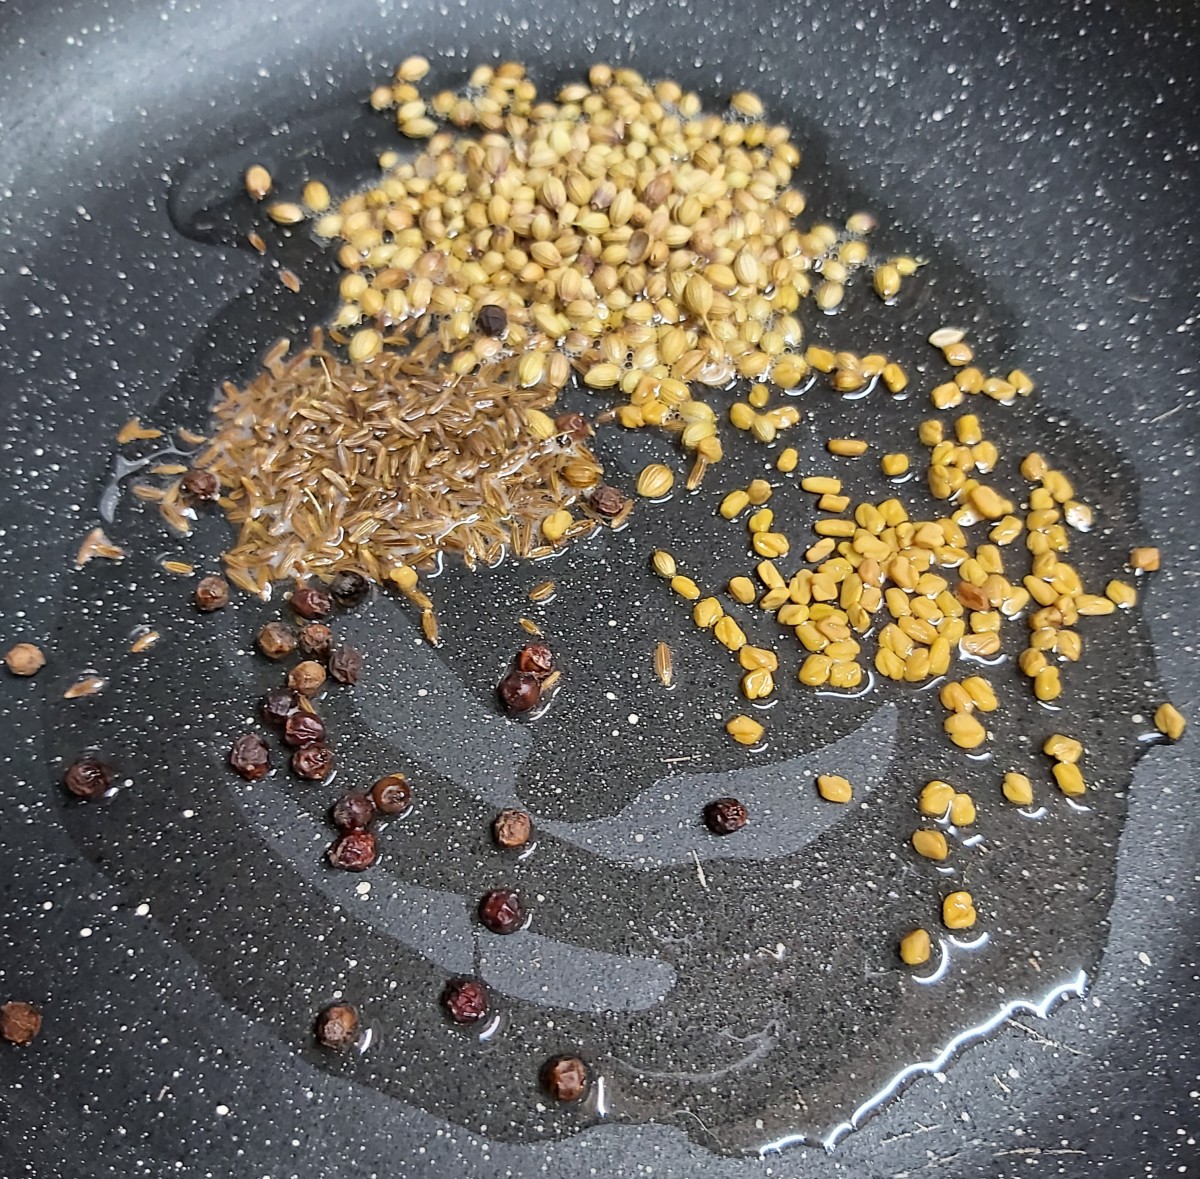 In a frying pan, heat 1 teaspoon of oil. Add 1 tablespoon of coriander seeds, 1 tablespoon of cumin seeds, 1/2 teaspoon fenugreek seeds, and 1/2 teaspoon of whole black peppercorns.